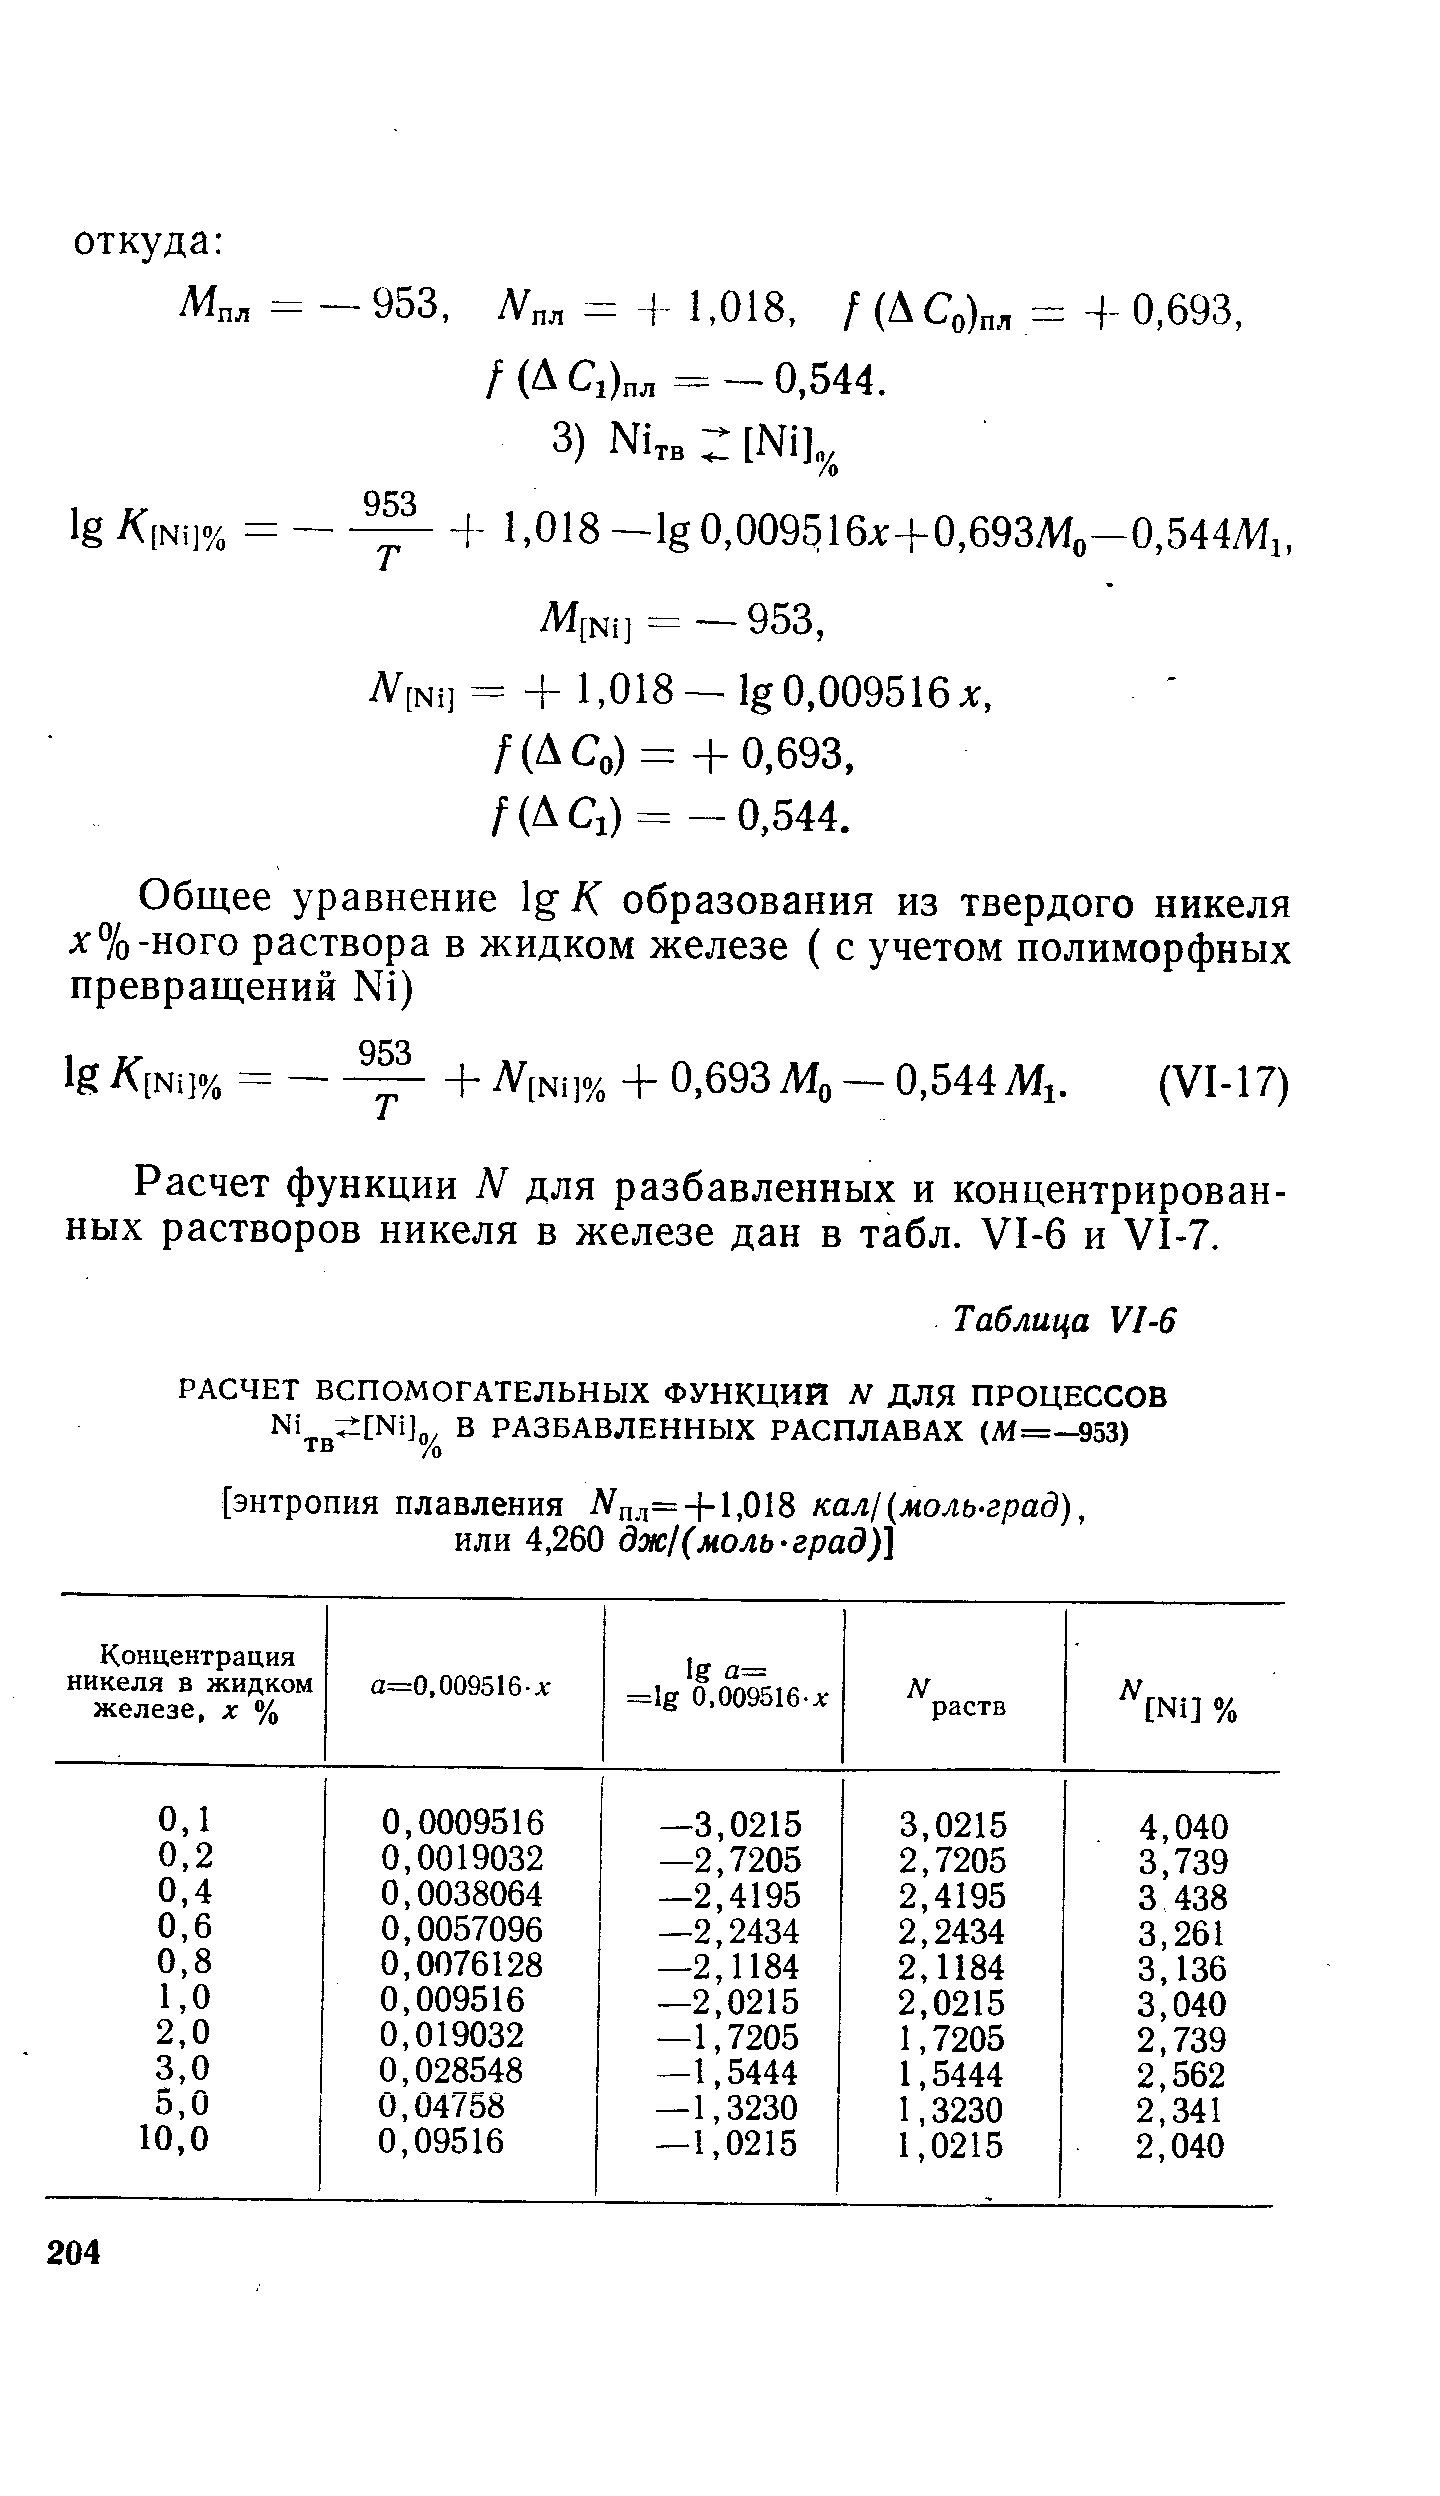 Расчет функции N для разбавленных и концентрированных растворов никеля в железе дан в табл. У1-6 и У1-7.
